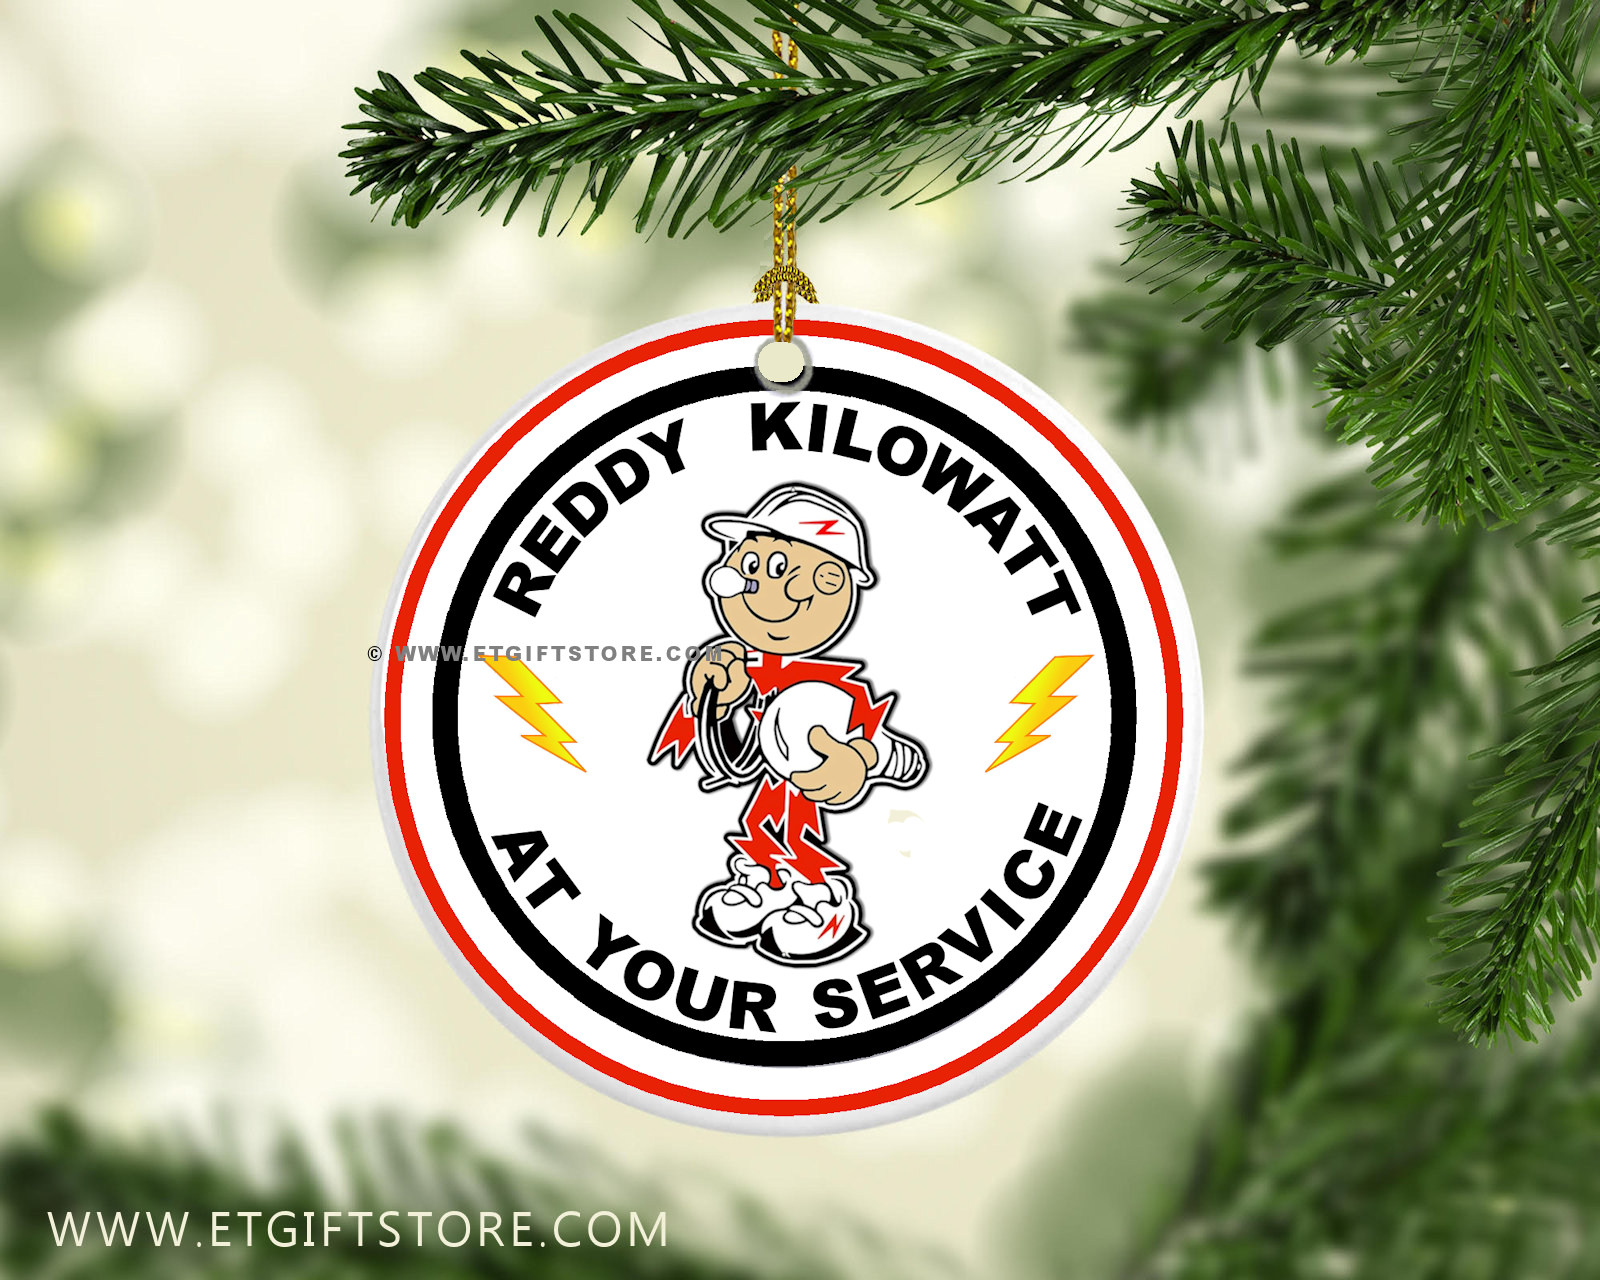 reddy kilowatt ornament at your service